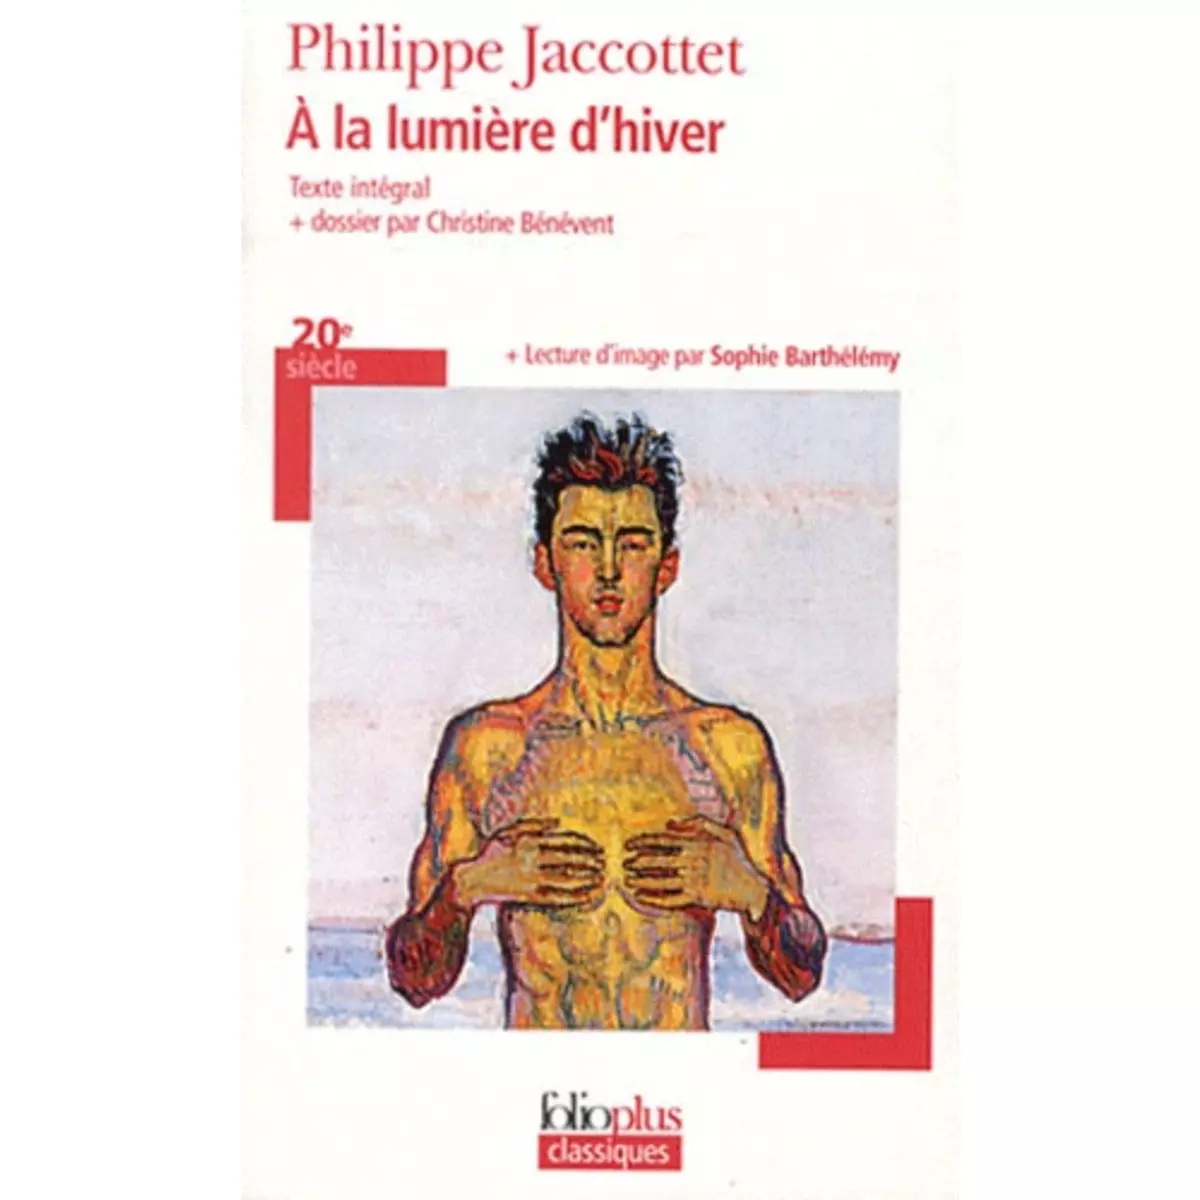  A LA LUMIERE D'HIVER, Jaccottet Philippe